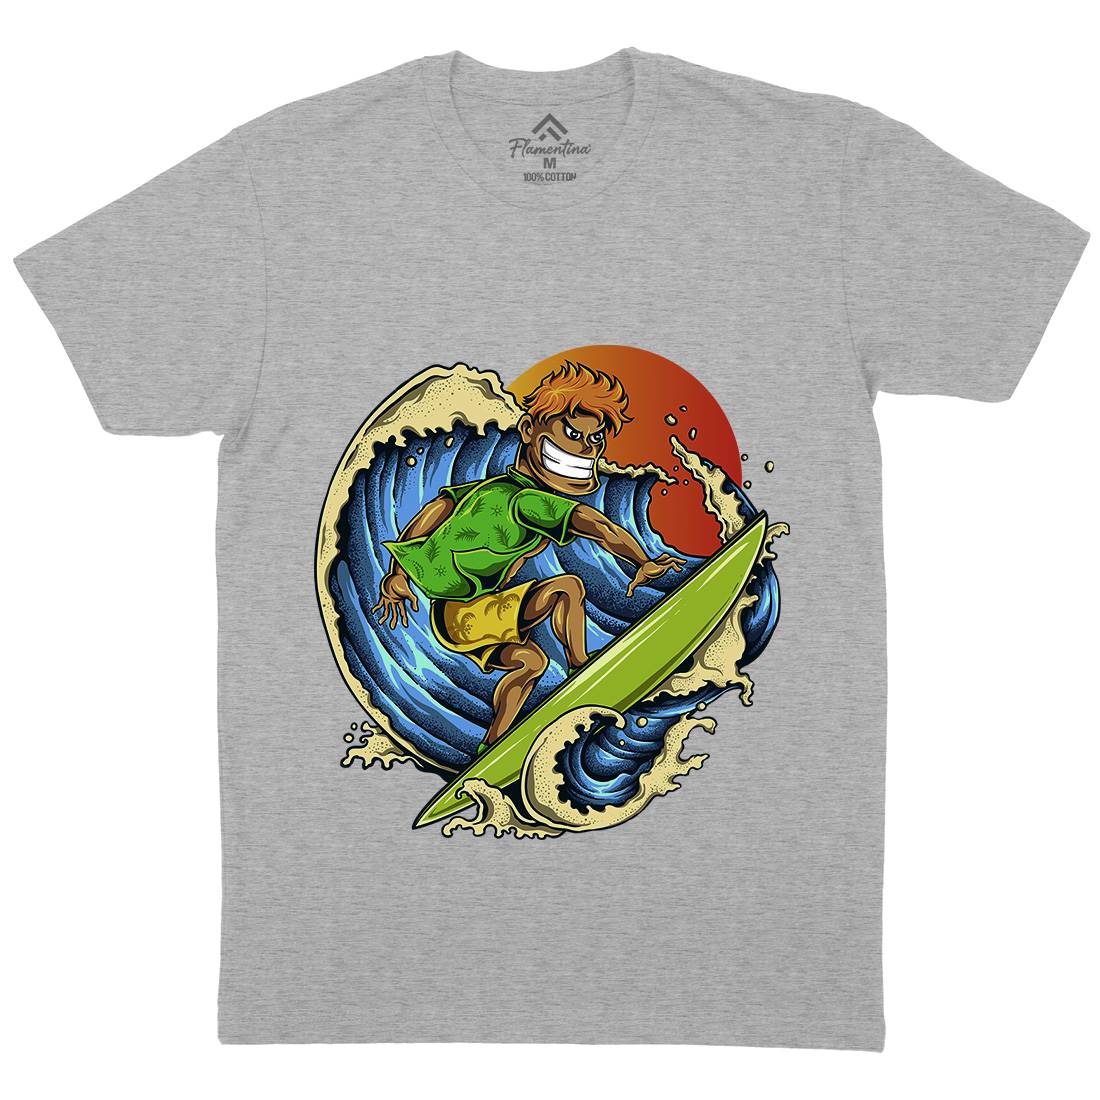 Pro Surfer Mens Crew Neck T-Shirt Surf A454